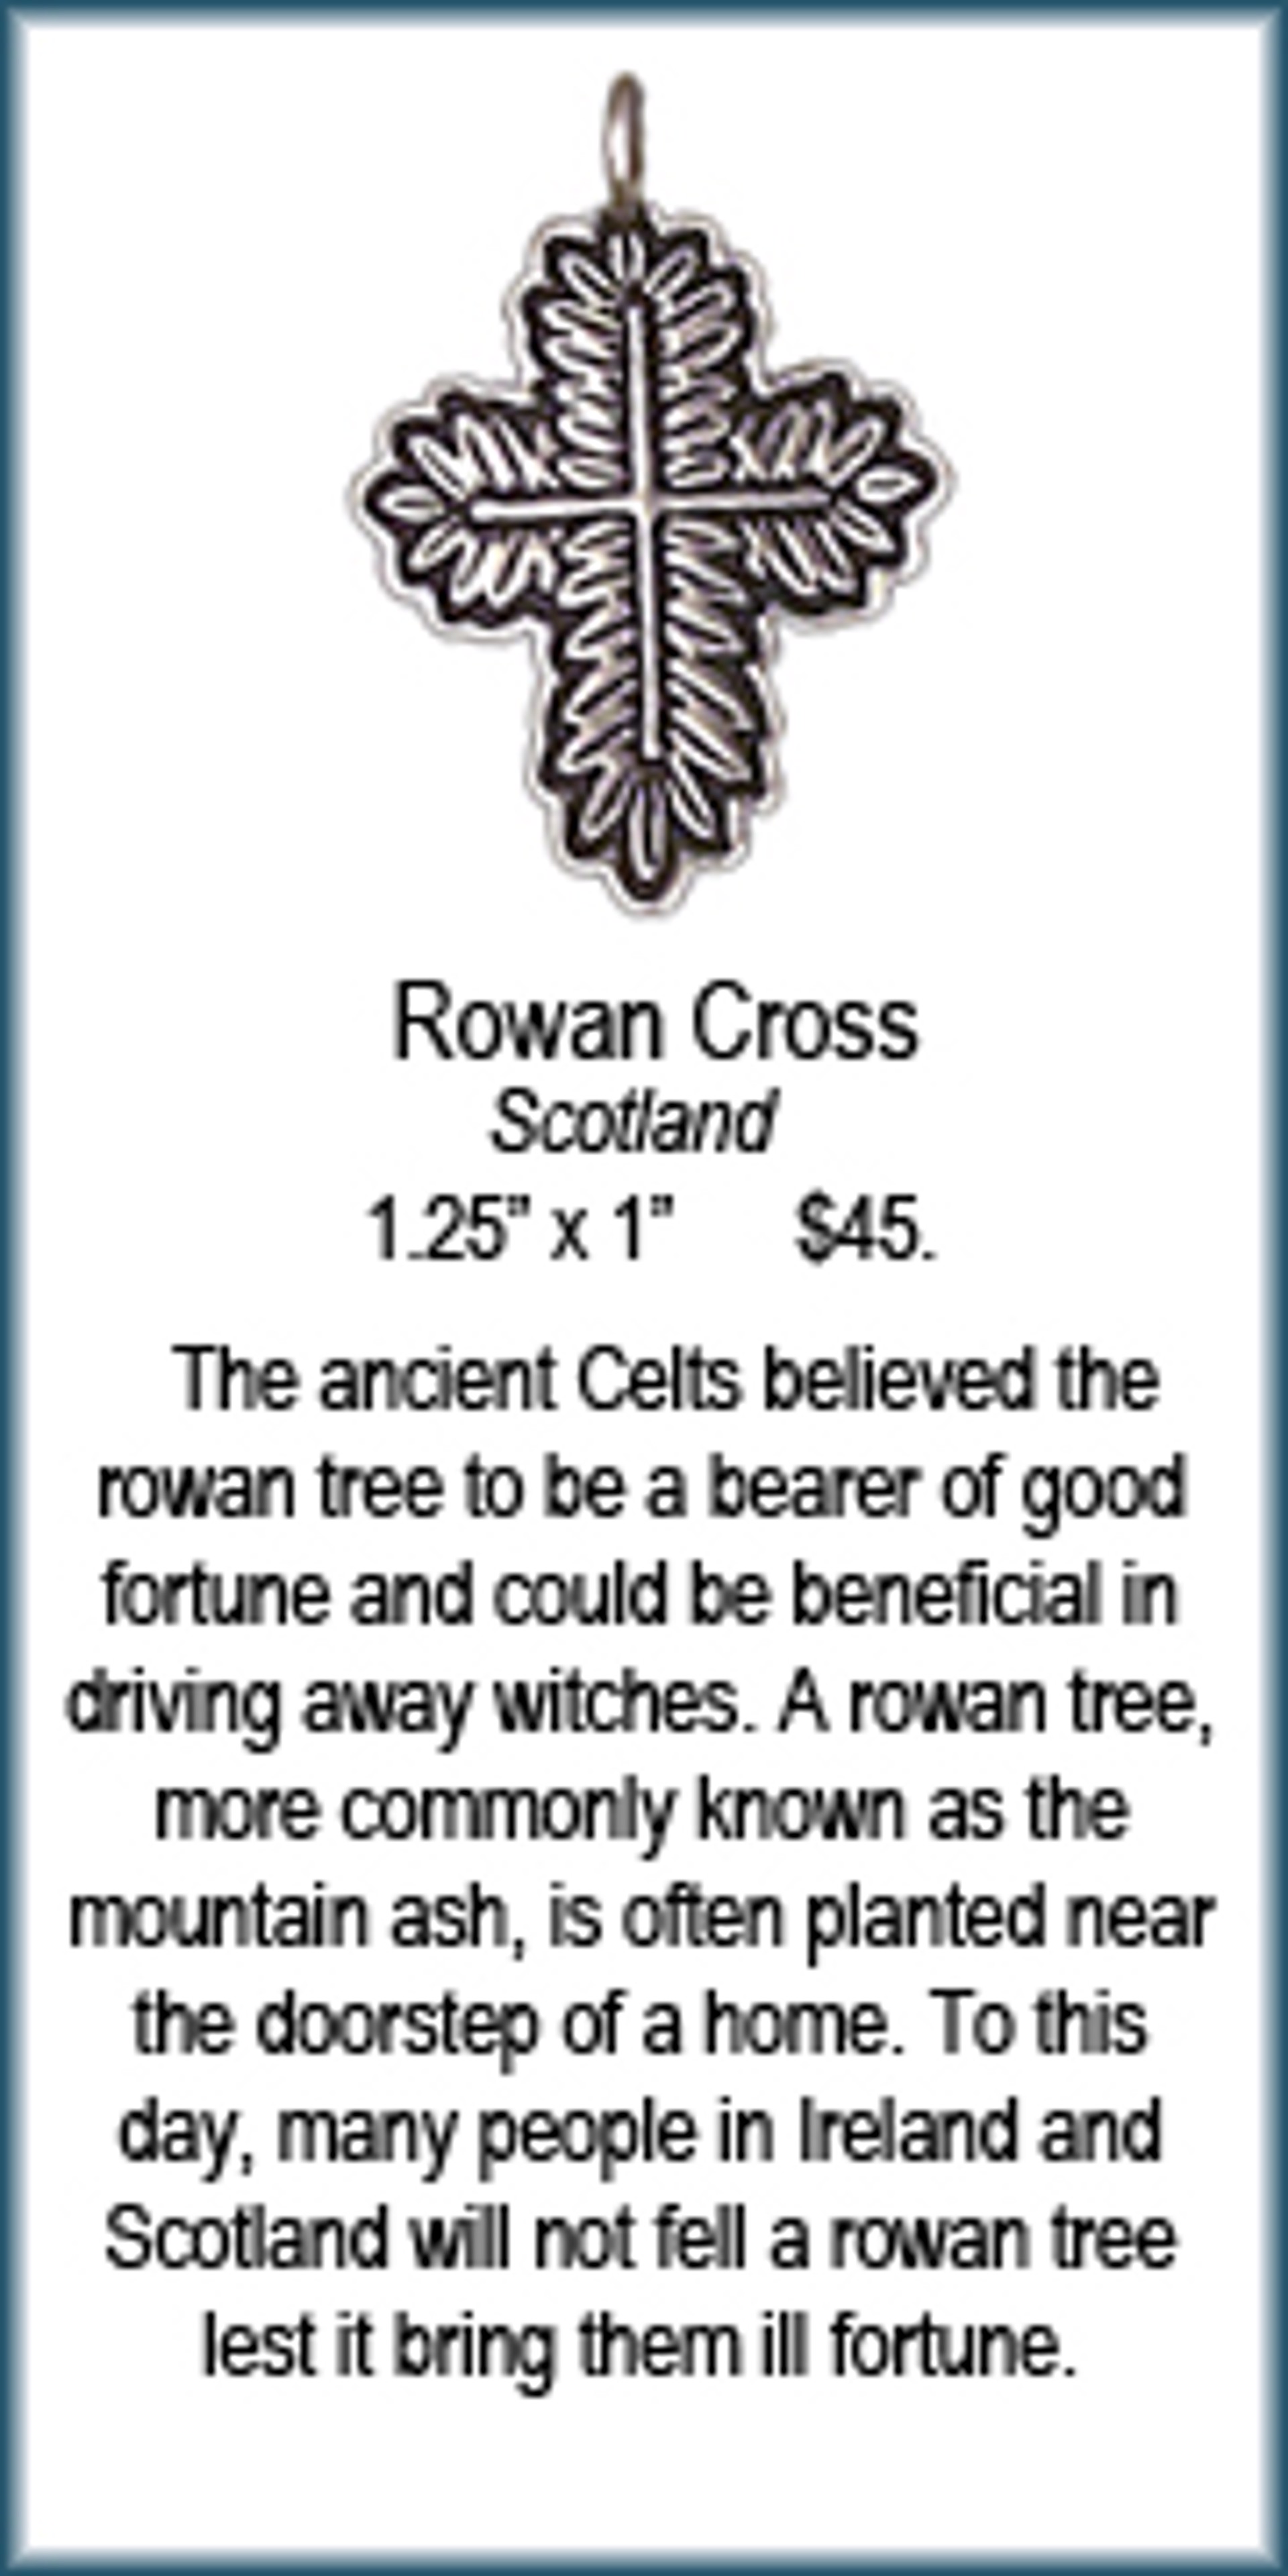 Cross - Rowan by Deanne McKeown